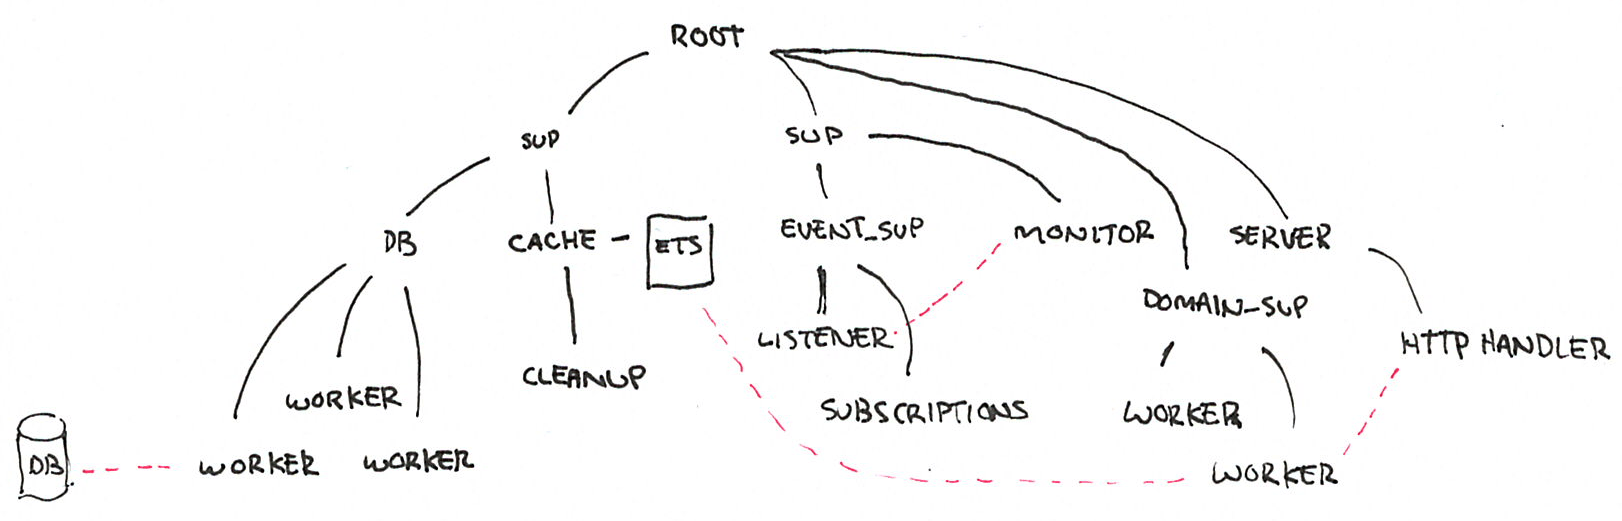 Figure 2: Sample supervision tree